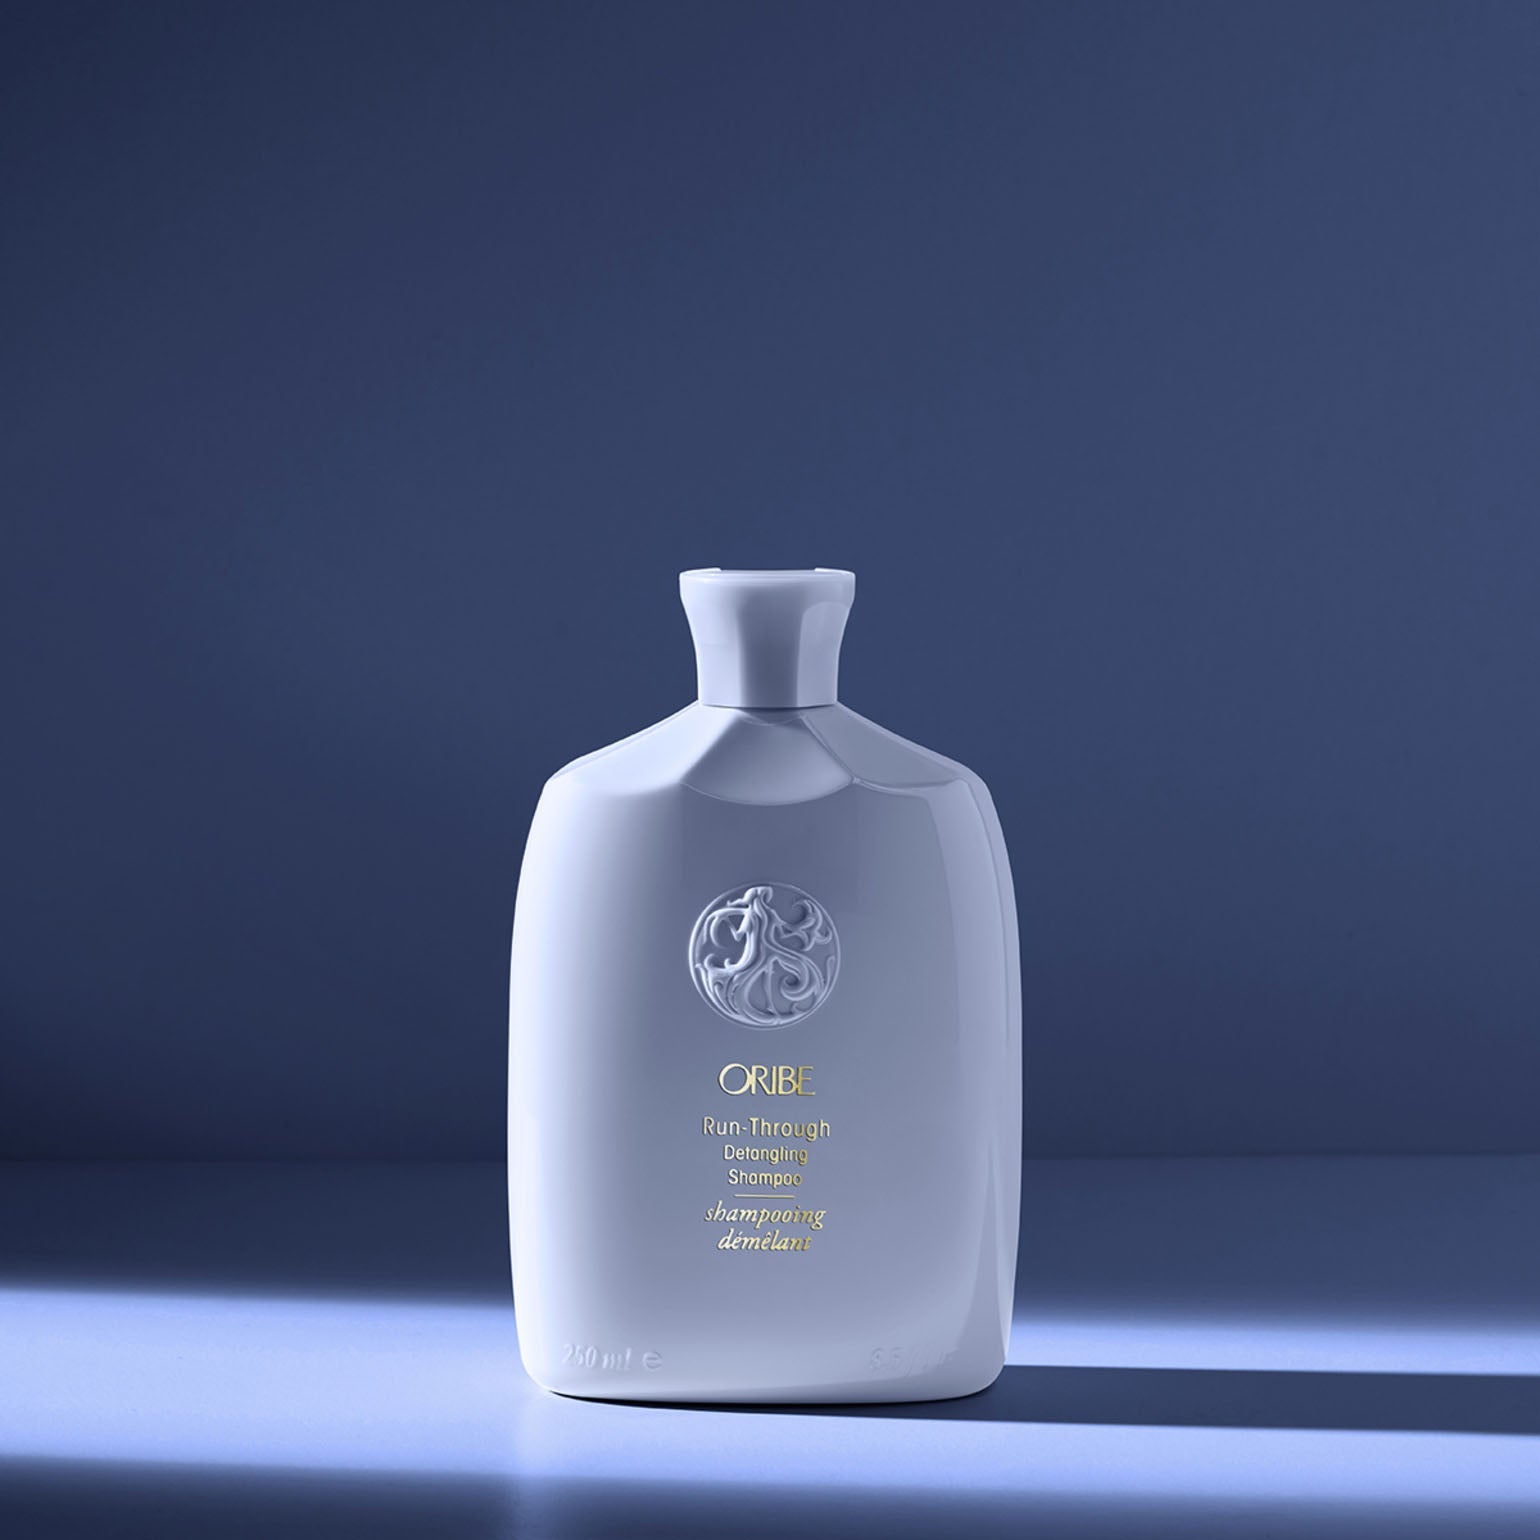 Oribe. Shampoing Démêlant Run-Through - 250 ml - Concept C. Shop